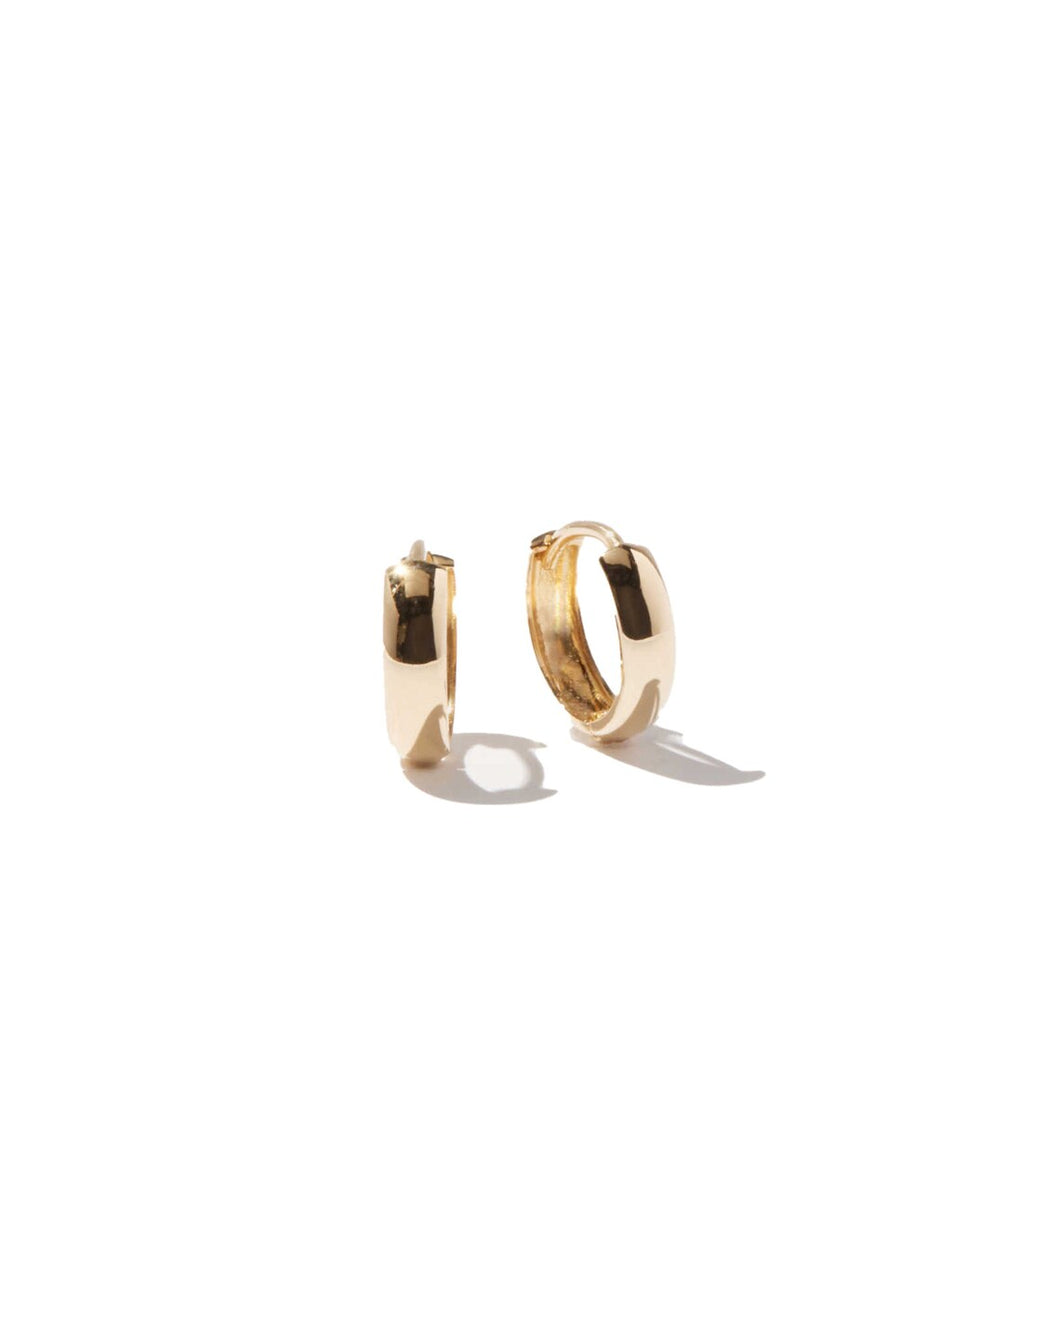 14k Solid Gold Huggie Hoop Earrings - Second Hole Hoops - Cartilage Hoop - Tiny Hoop Earrings - Gold Conch Hoops - Mini Hoop - Small Hoop